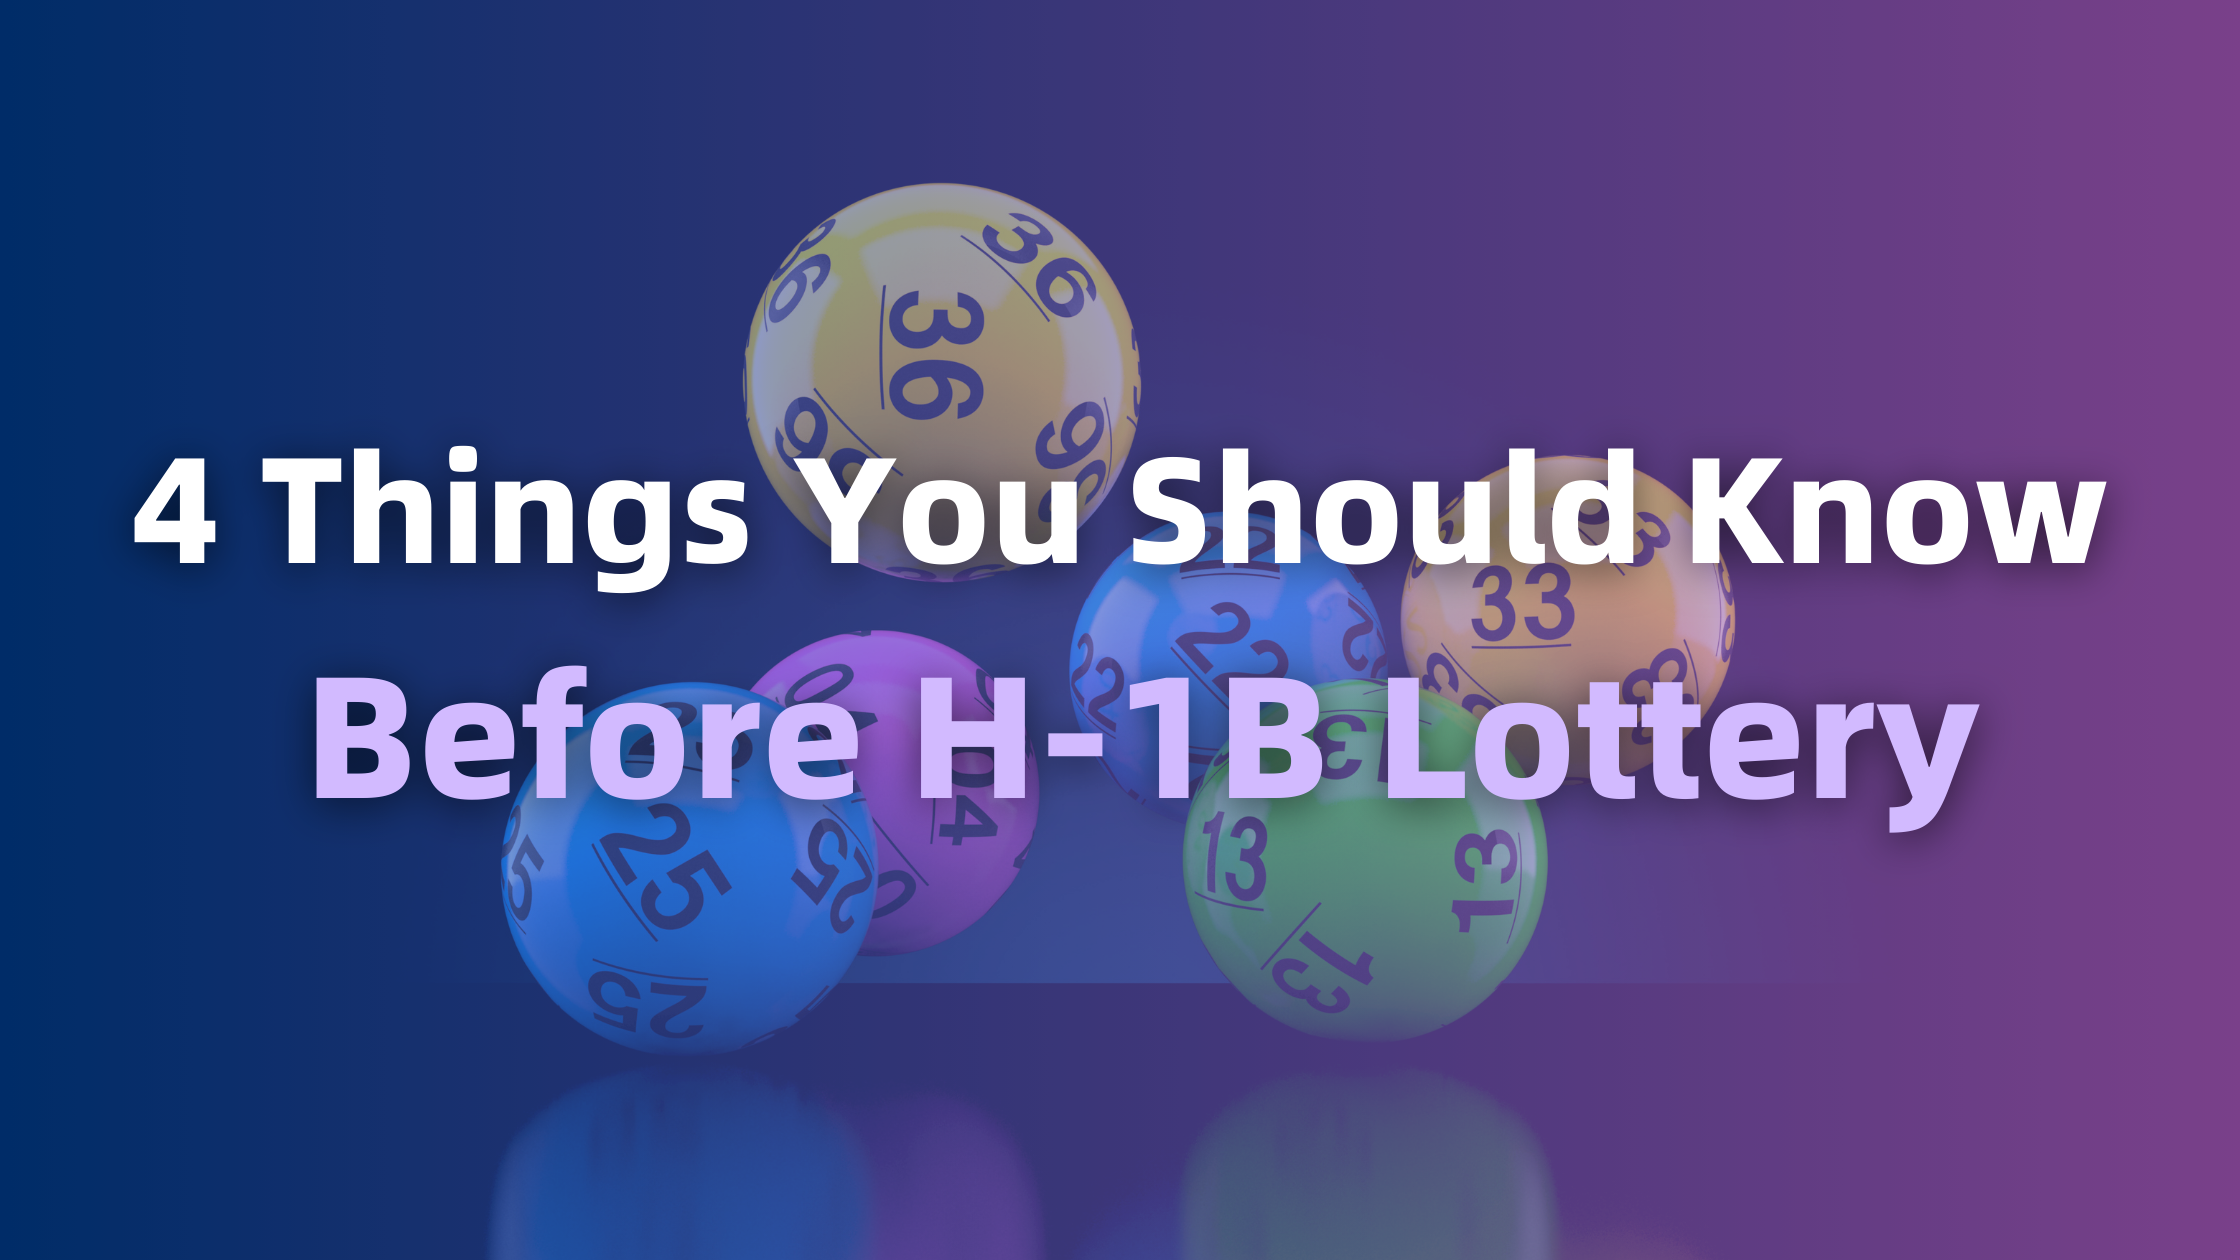 H1B Lottery